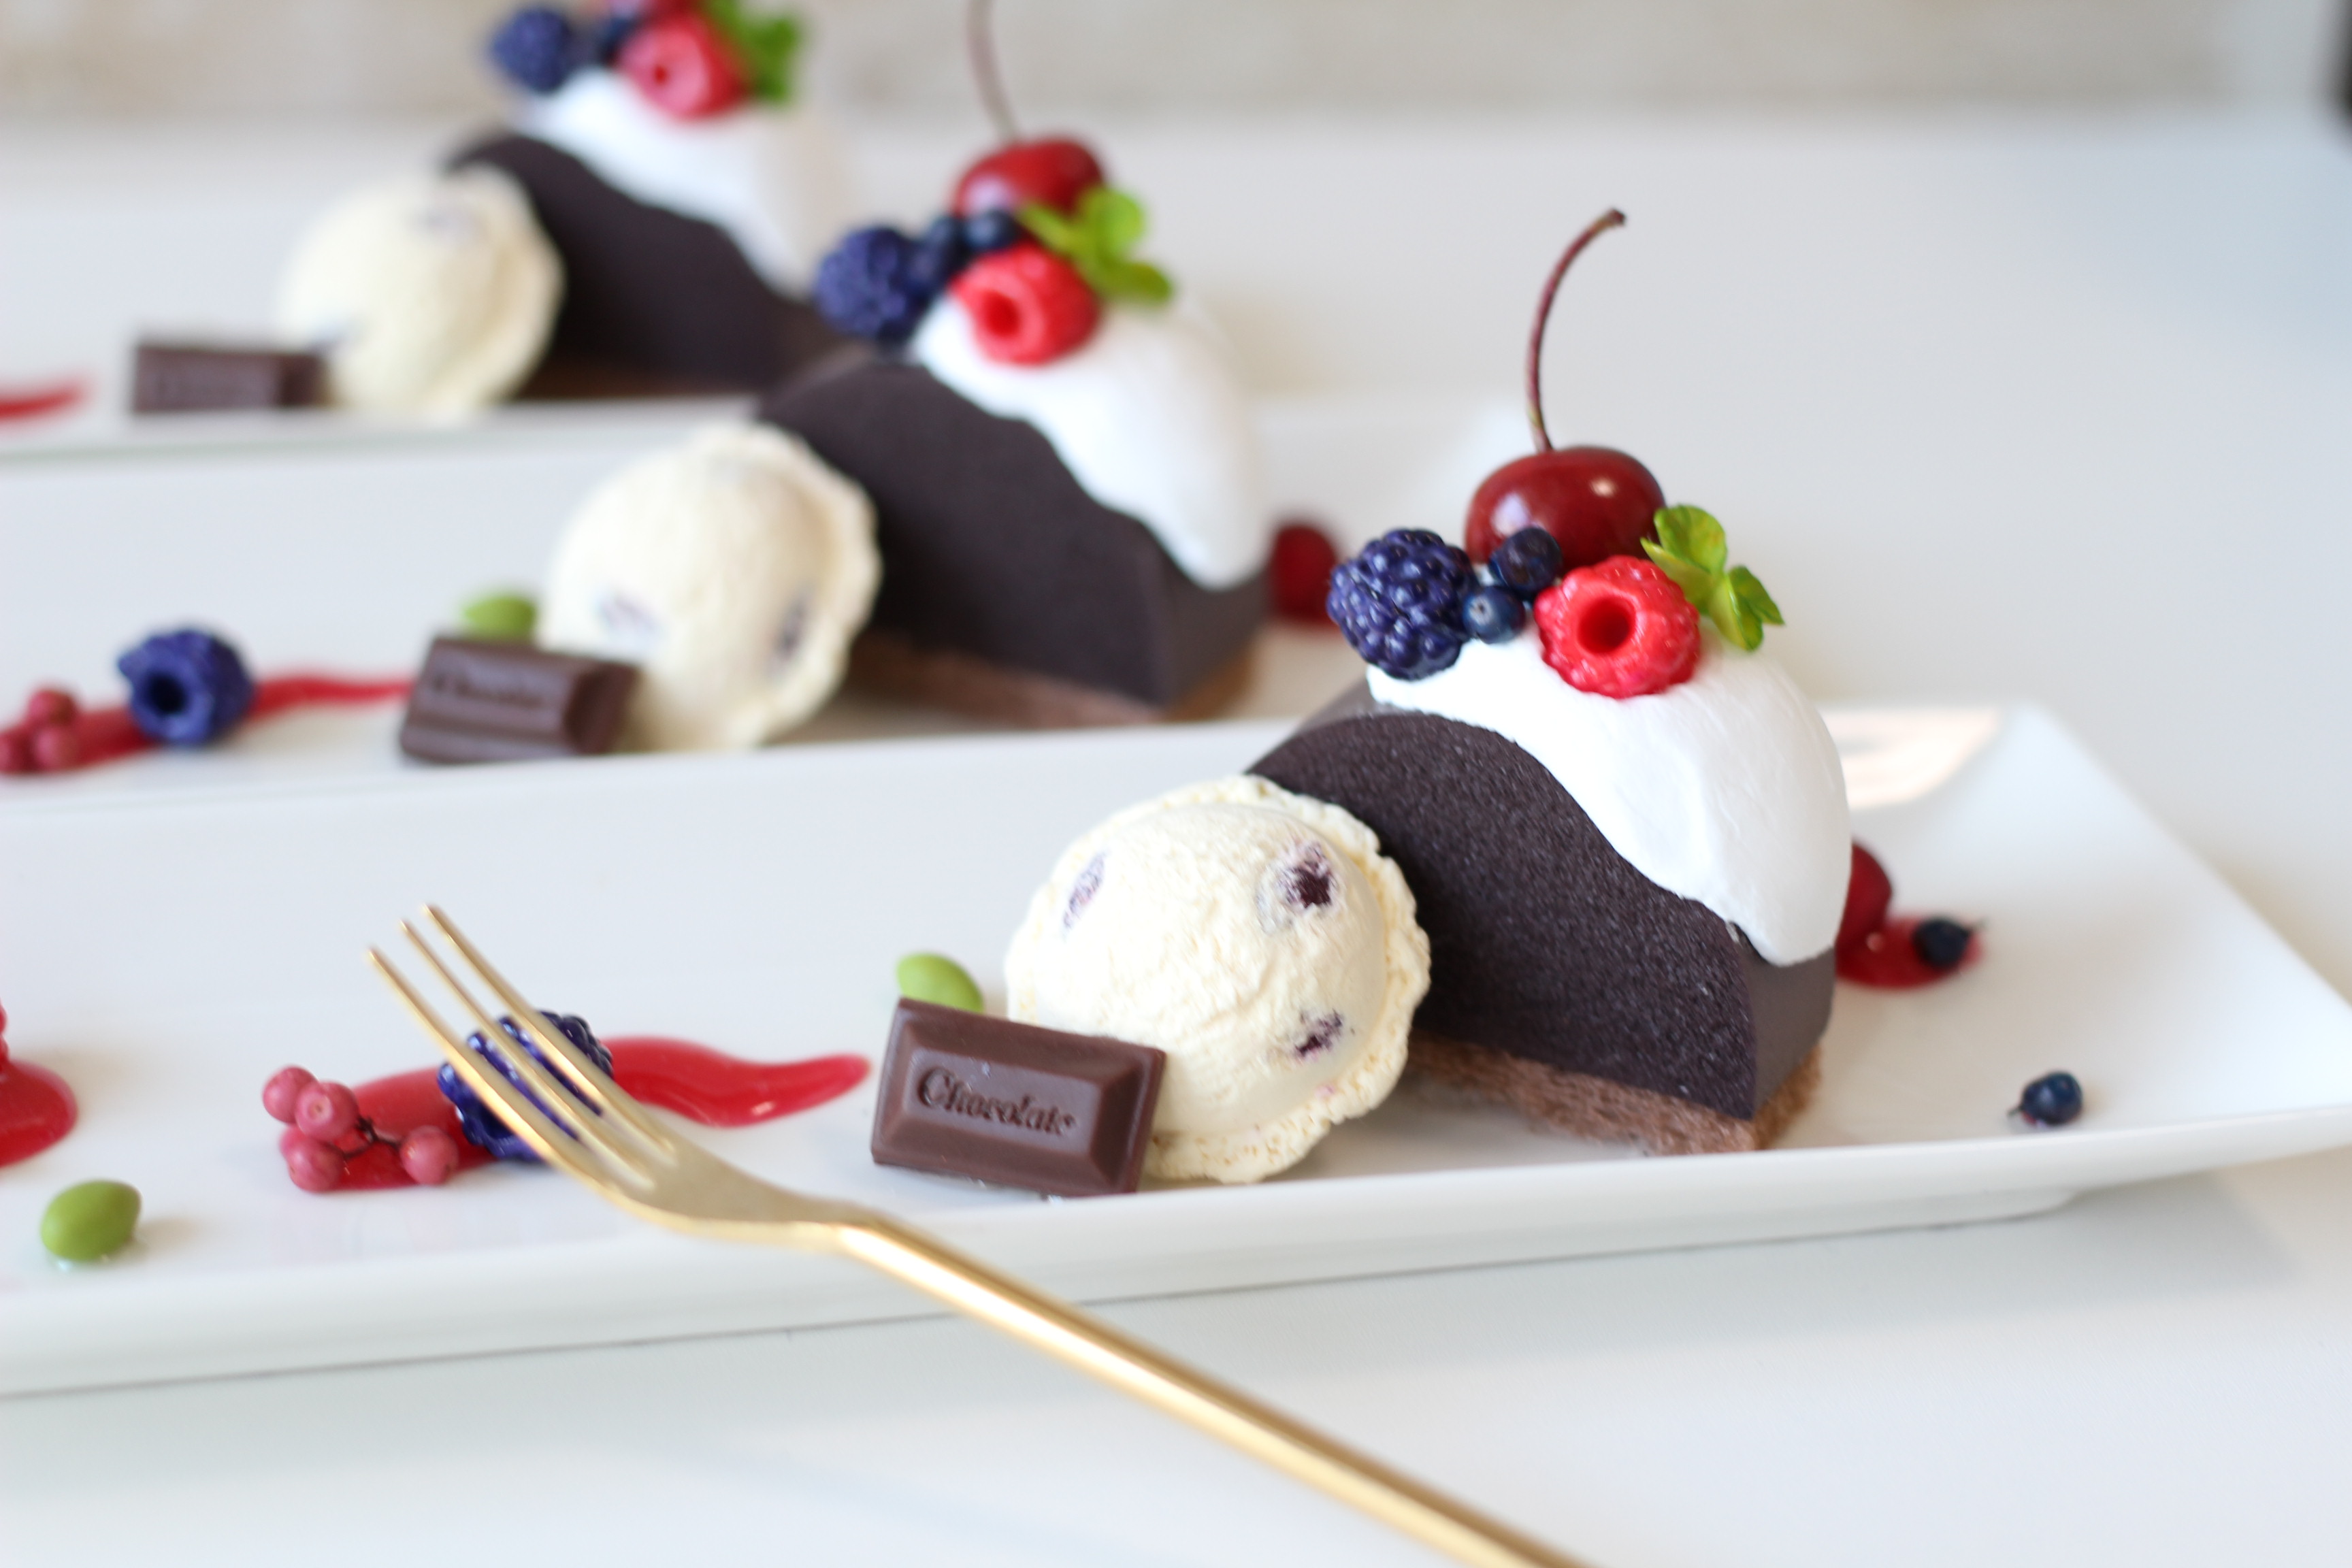 チョコレートムースケーキとラムレーズンアイスのデザートプレート 送料無料 Iichi ハンドメイド クラフト作品 手仕事品の通販